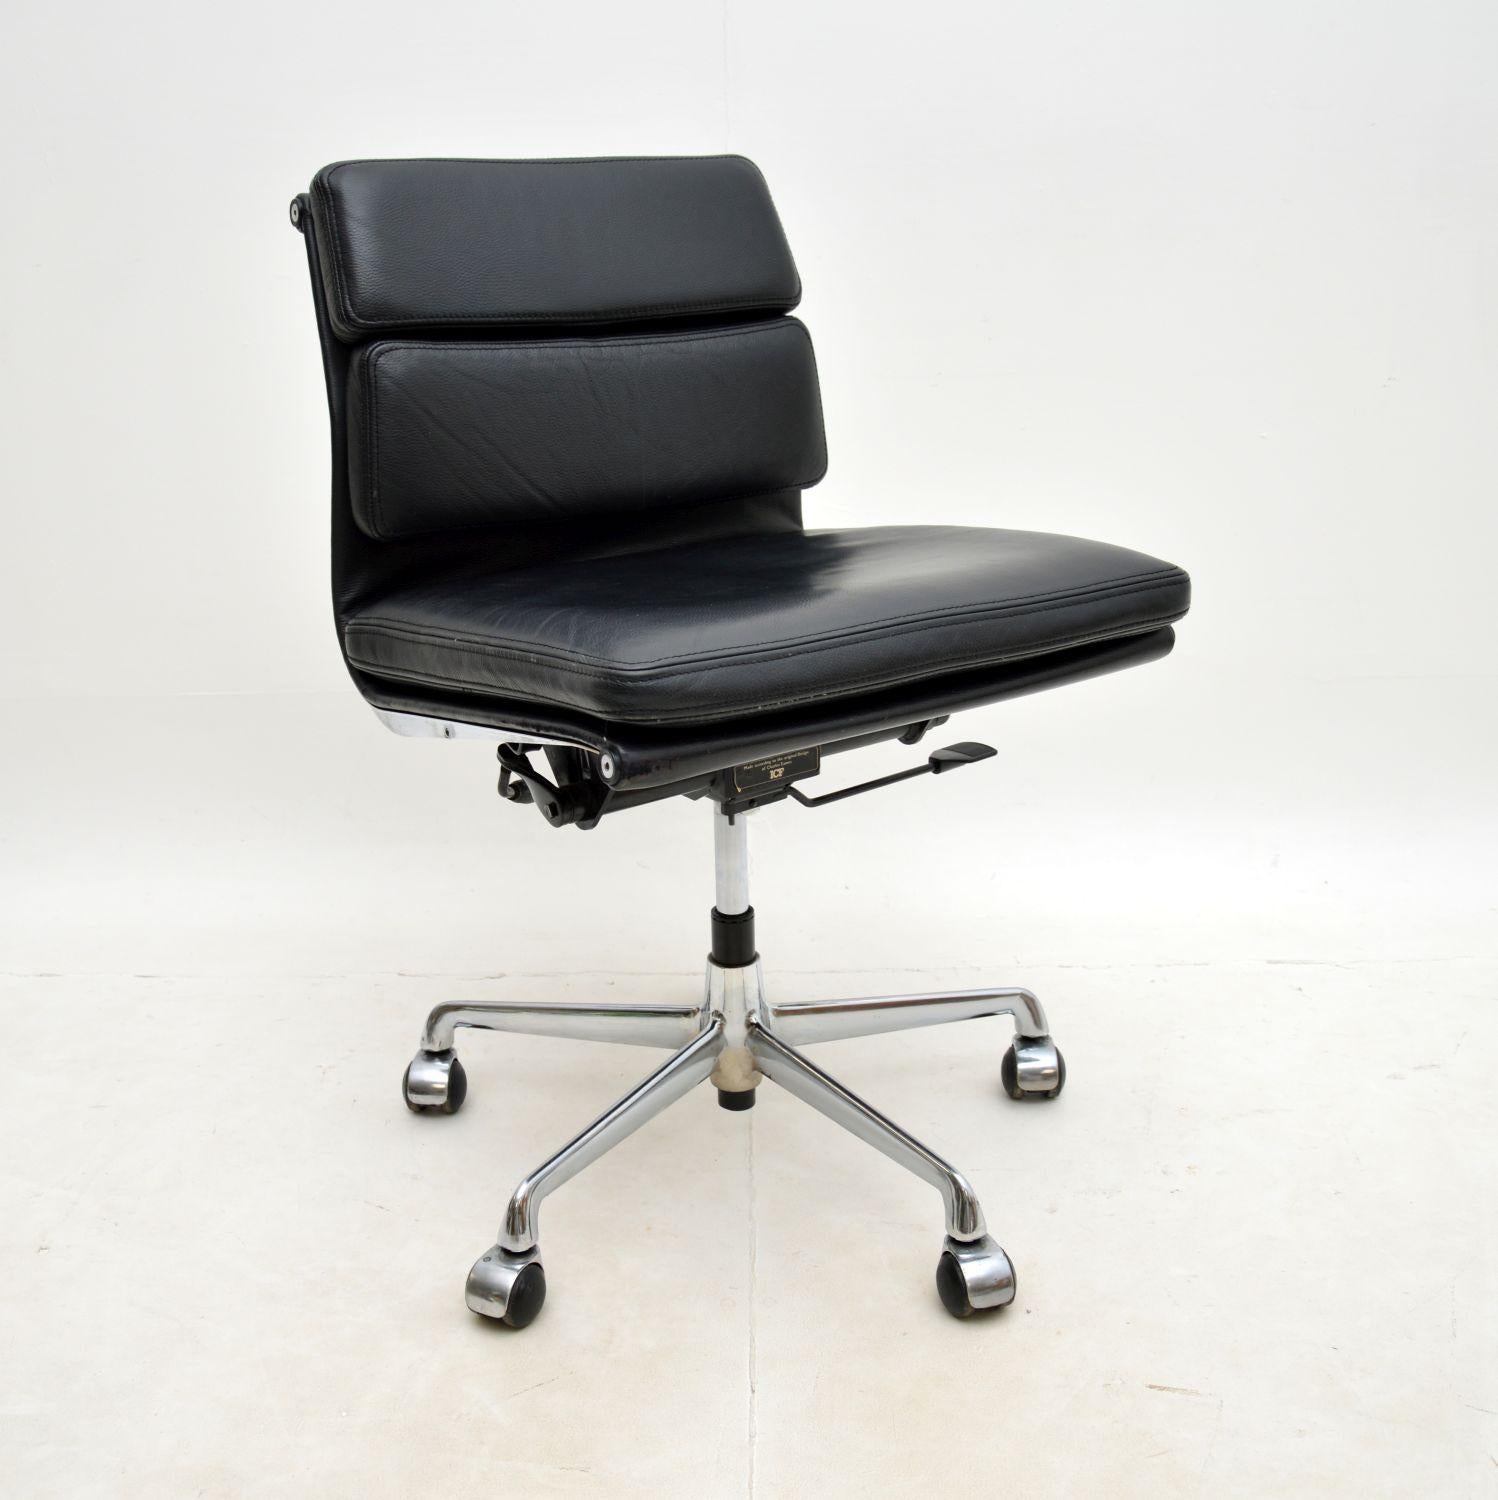 Cette chaise de bureau Eames vintage en cuir souple, au design élégant et emblématique, a été fabriquée par ICF. Elle a été fabriquée en Italie par ICF, l'une des seules entreprises à avoir obtenu une licence pour fabriquer des chaises Eames